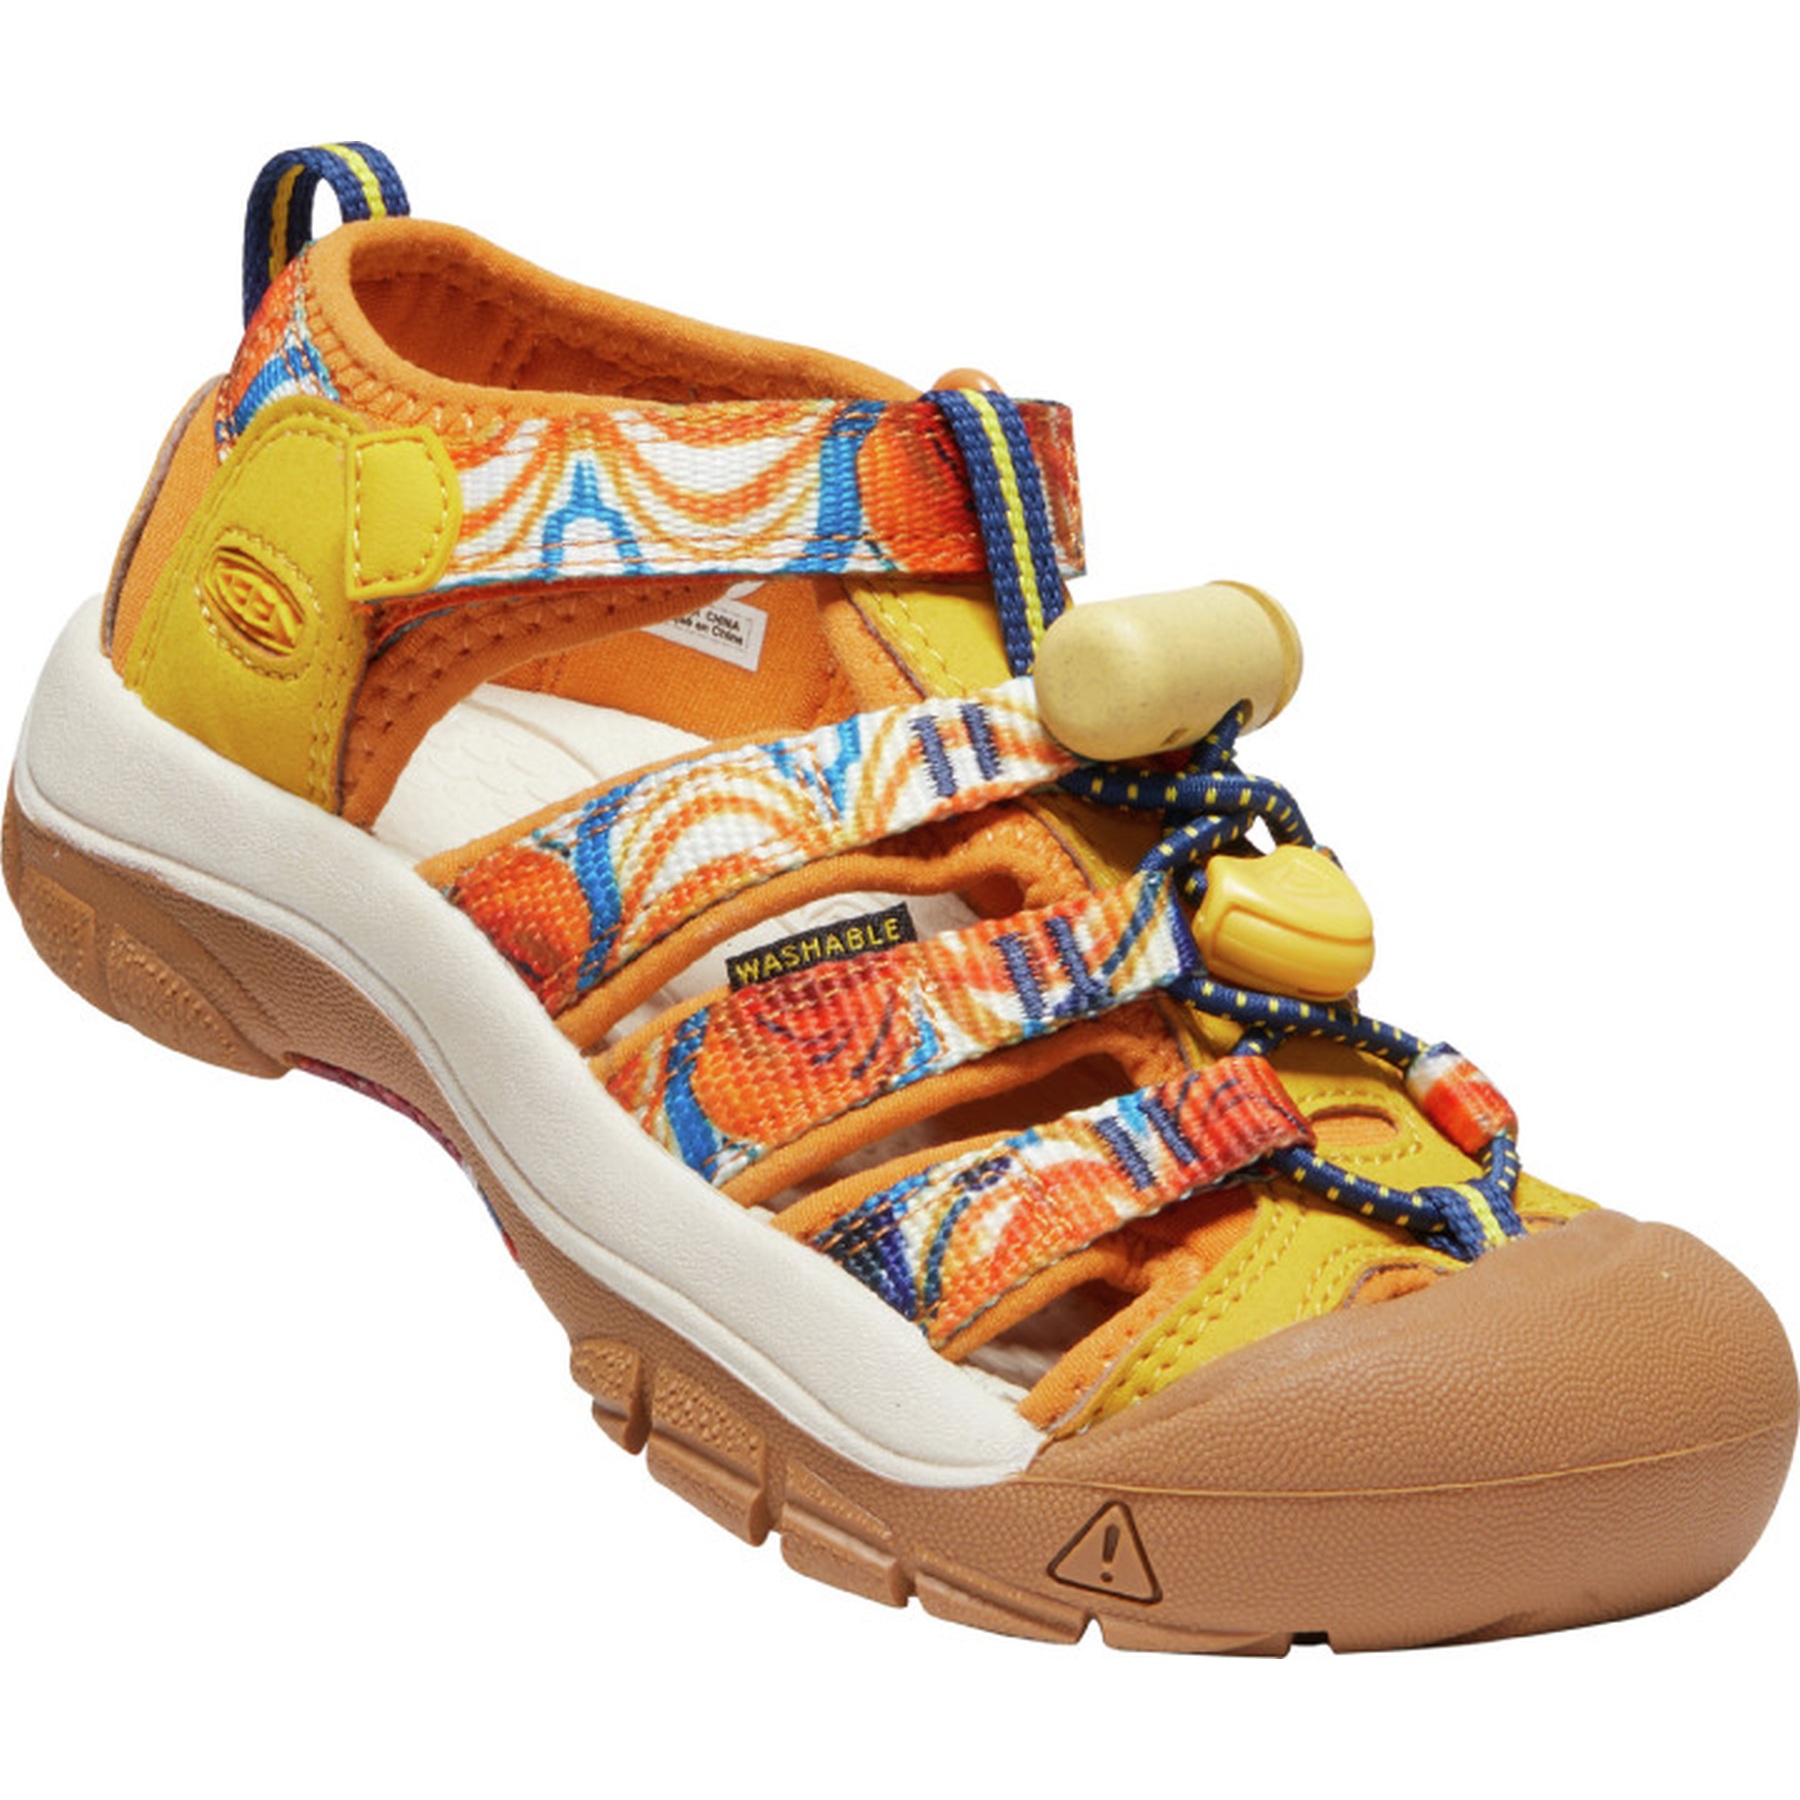 Picture of KEEN Newport H2 Kids Sandals - Orange Peel / Yellow (Size 24-31)